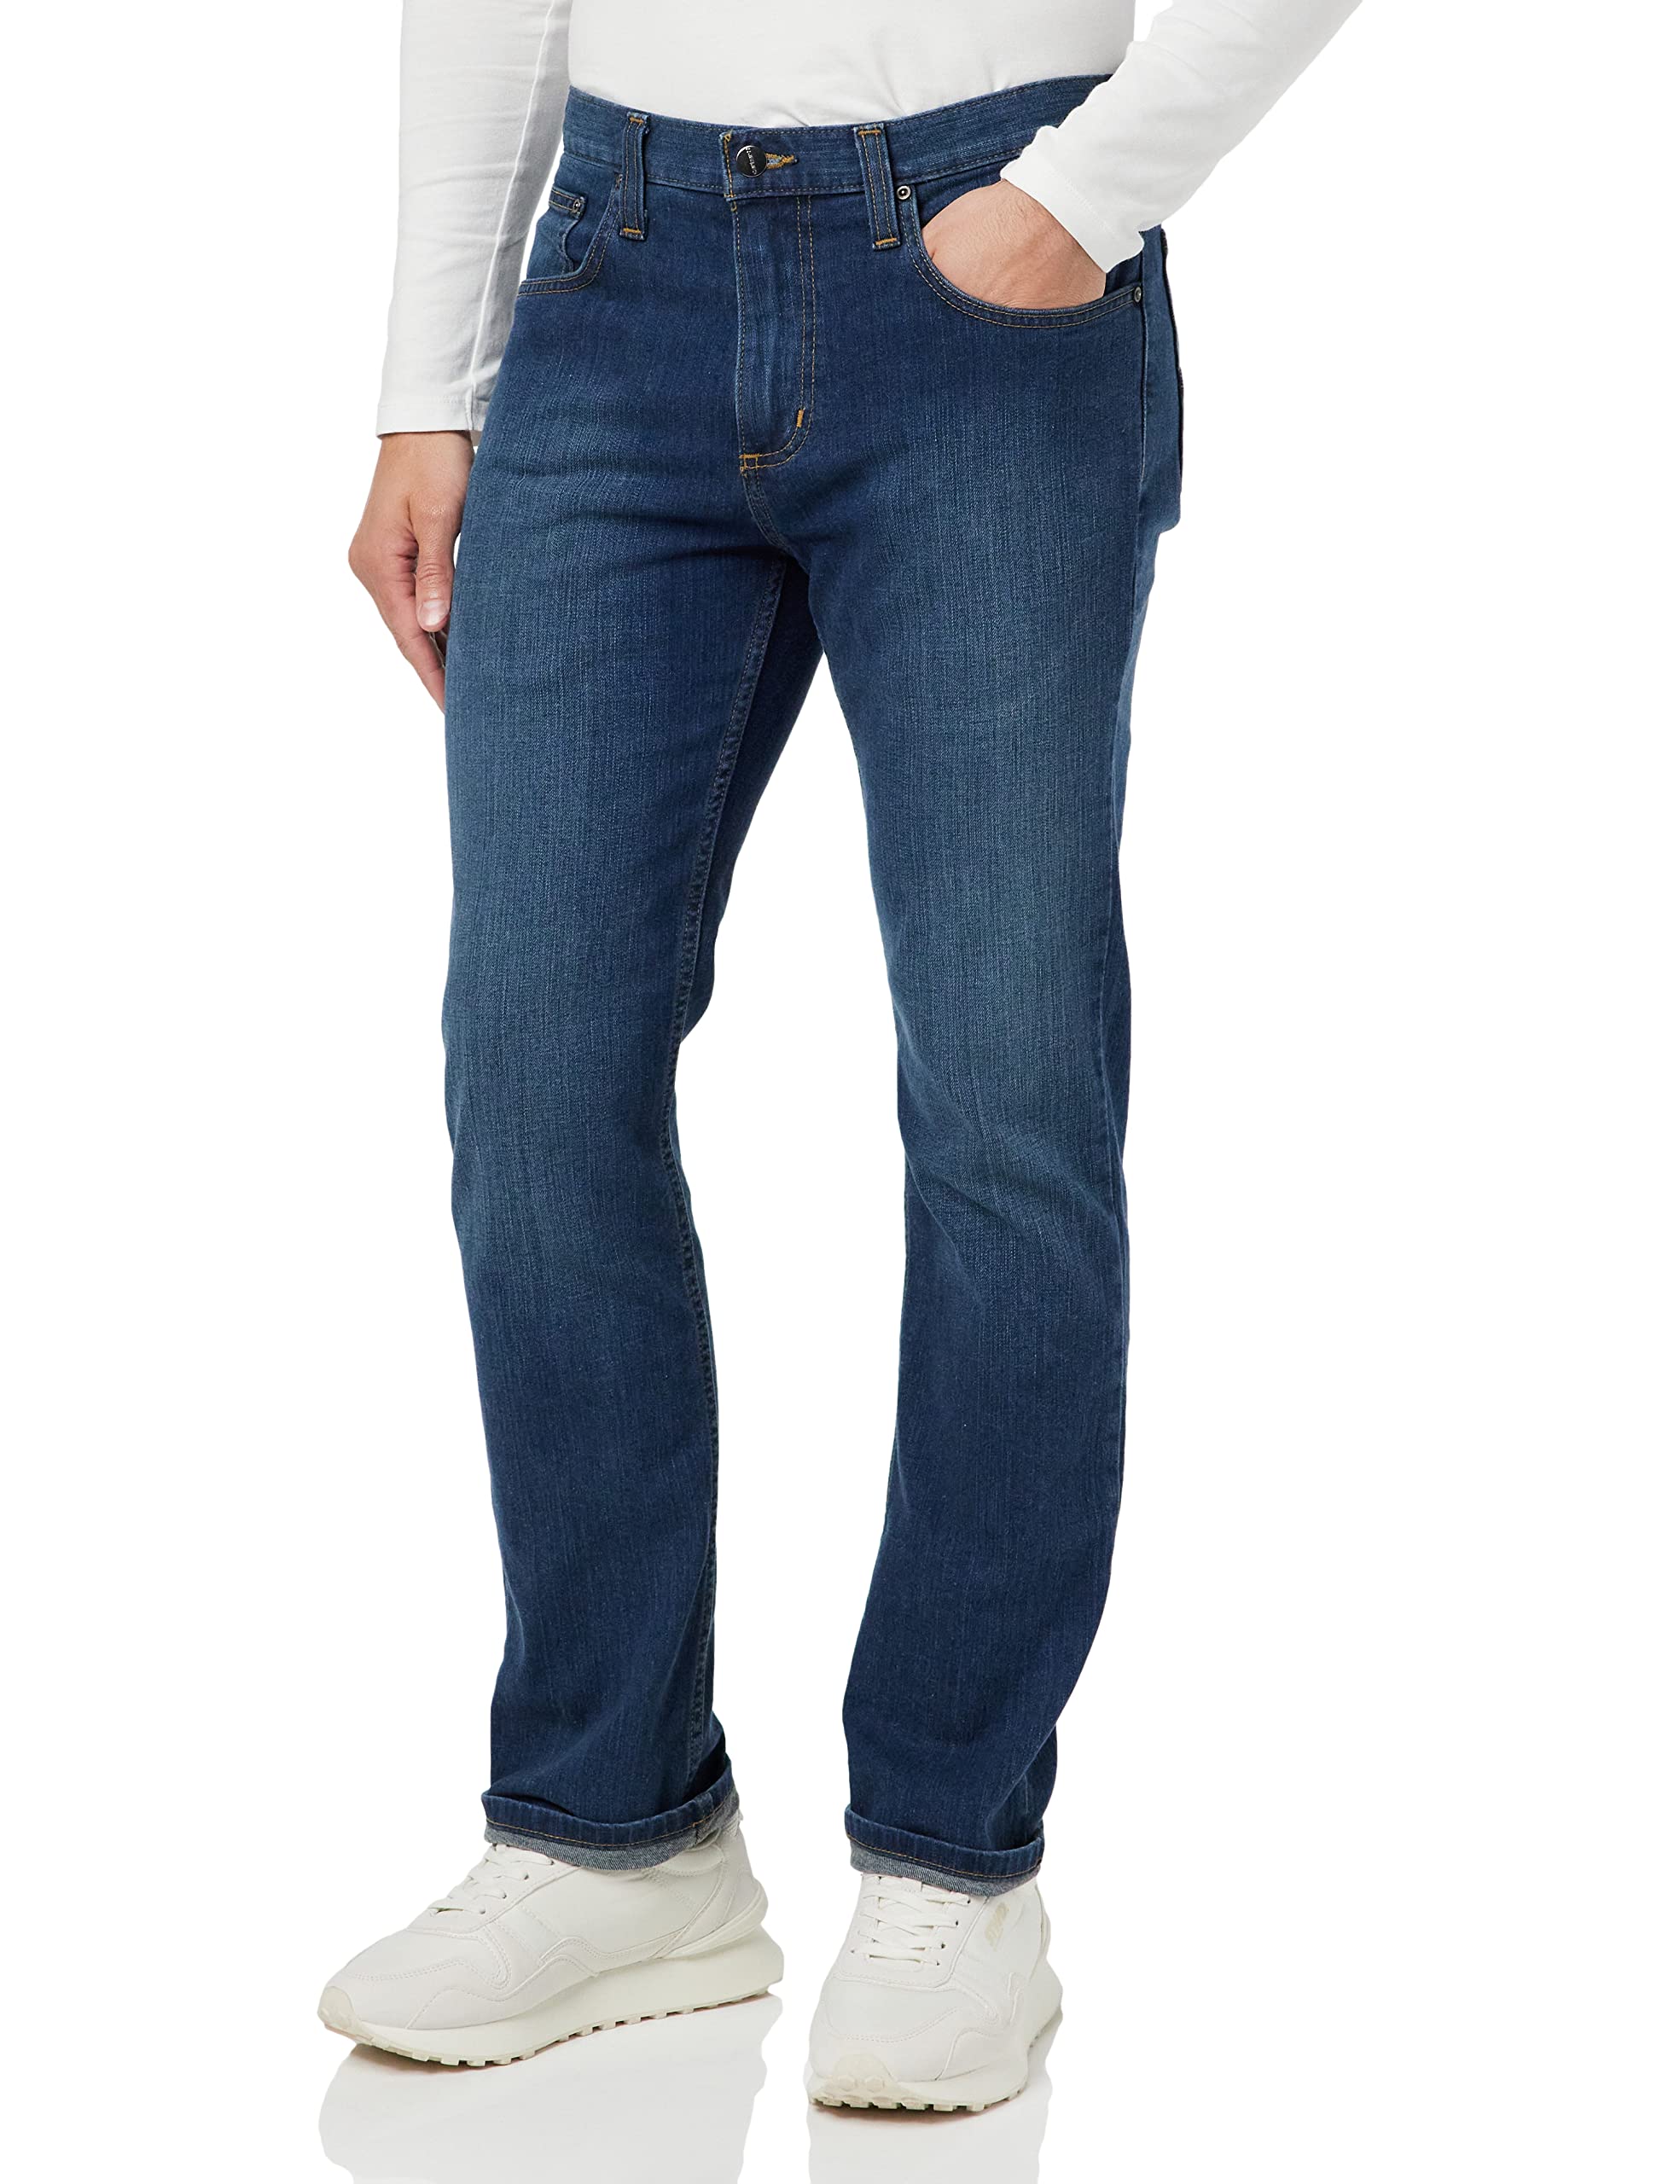 Carhartt, Herren, Rugged Flex® Jeans mit 5 Taschen, gerader Passform und schmal zulaufendem Bein, Superior, W32/L34